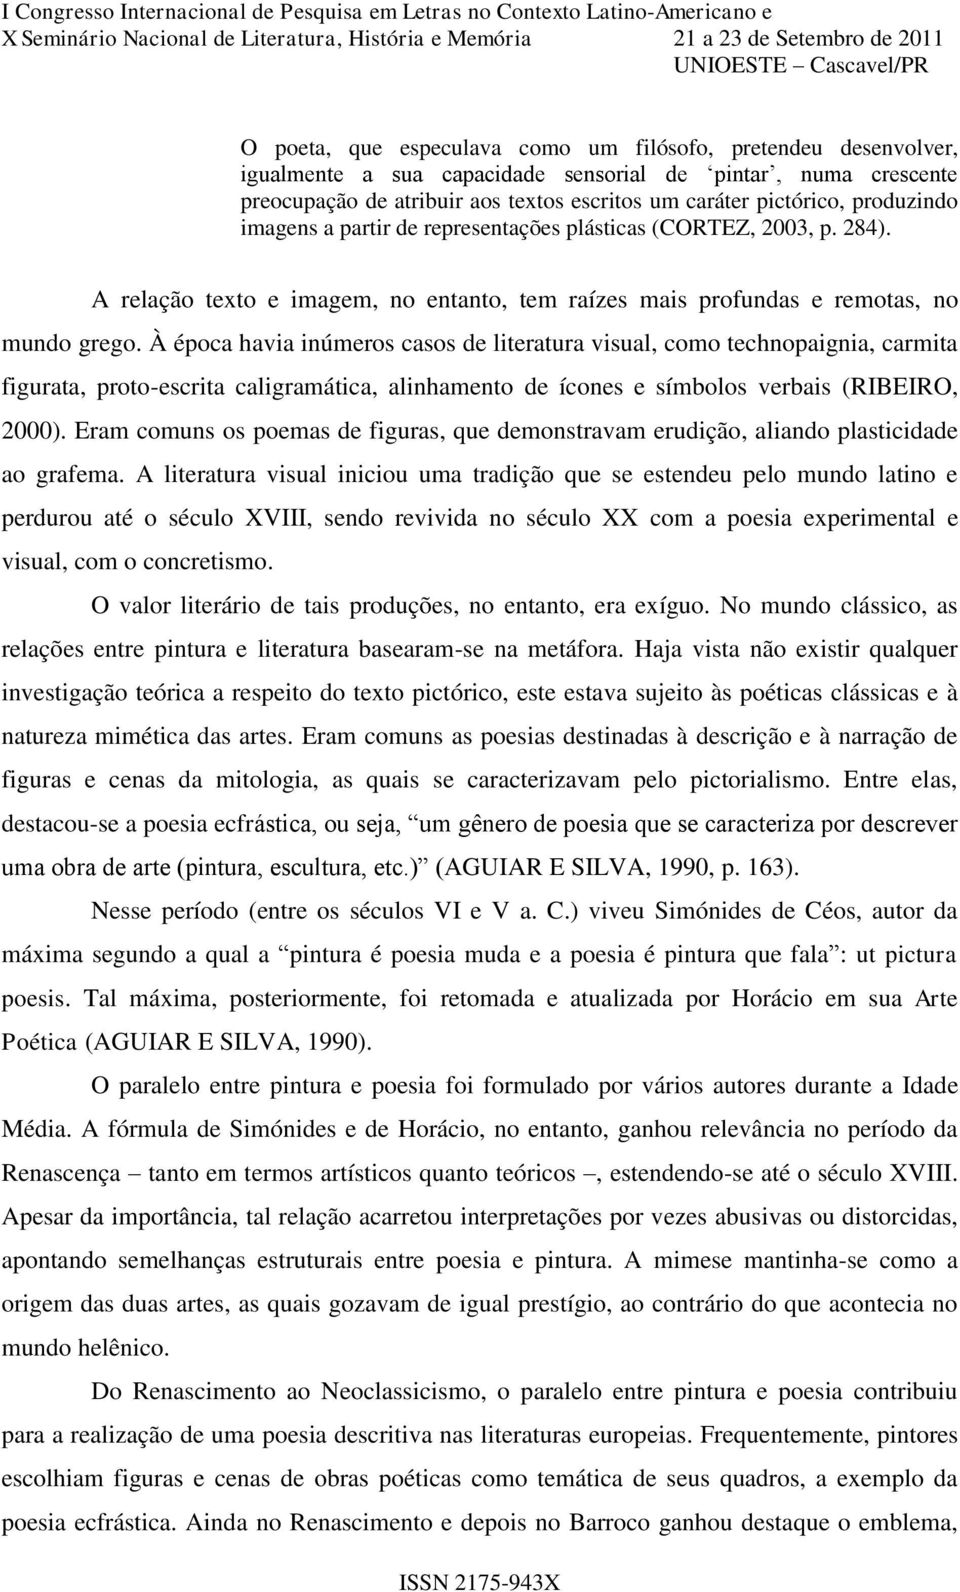 À época havia inúmeros casos de literatura visual, como technopaignia, carmita figurata, proto-escrita caligramática, alinhamento de ícones e símbolos verbais (RIBEIRO, 2000).